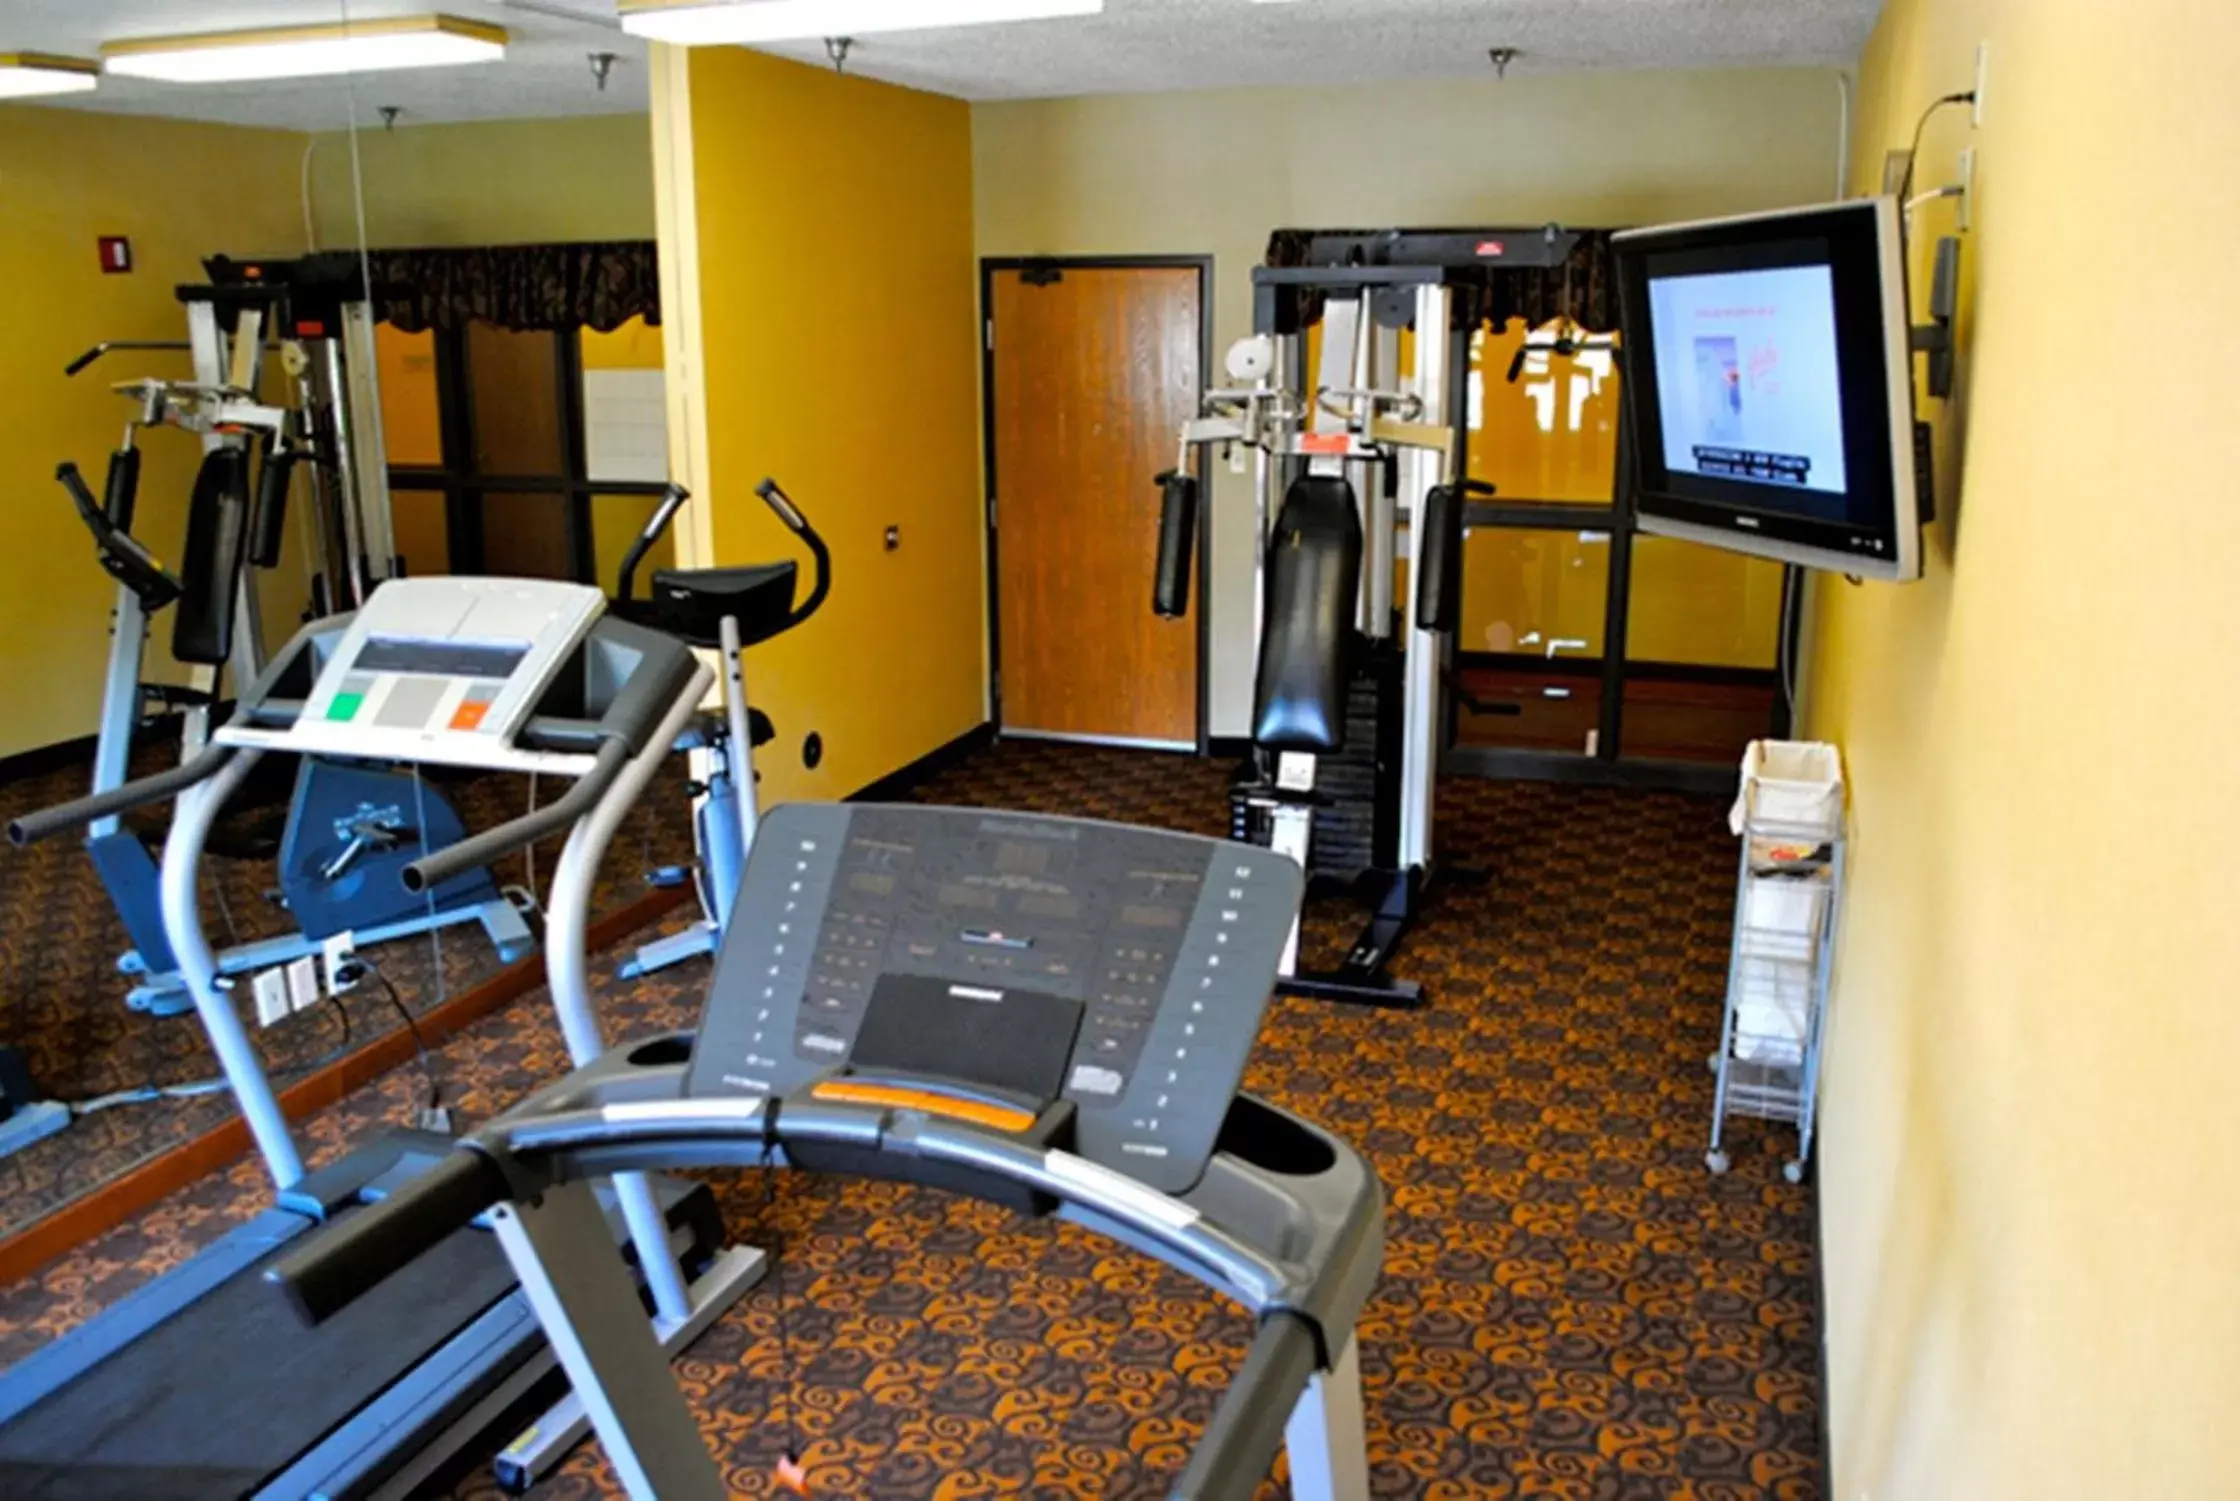 Fitness centre/facilities, Fitness Center/Facilities in Geneva Motel Inn